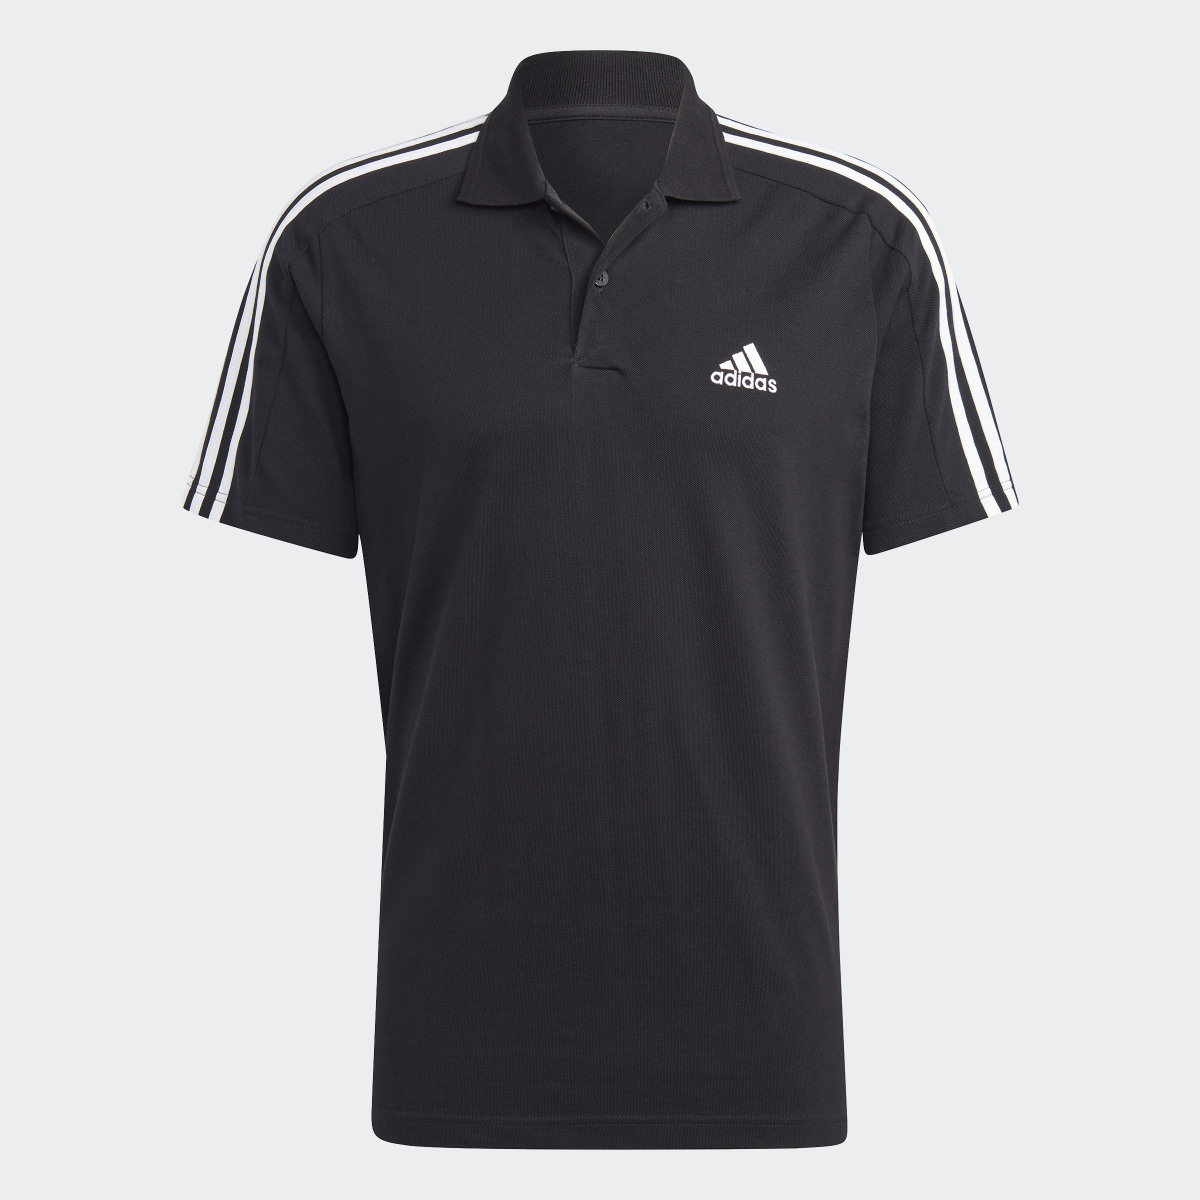 Adidas Essentials Piqué Embroidered Small Logo 3-Stripes Polo Shirt. 6